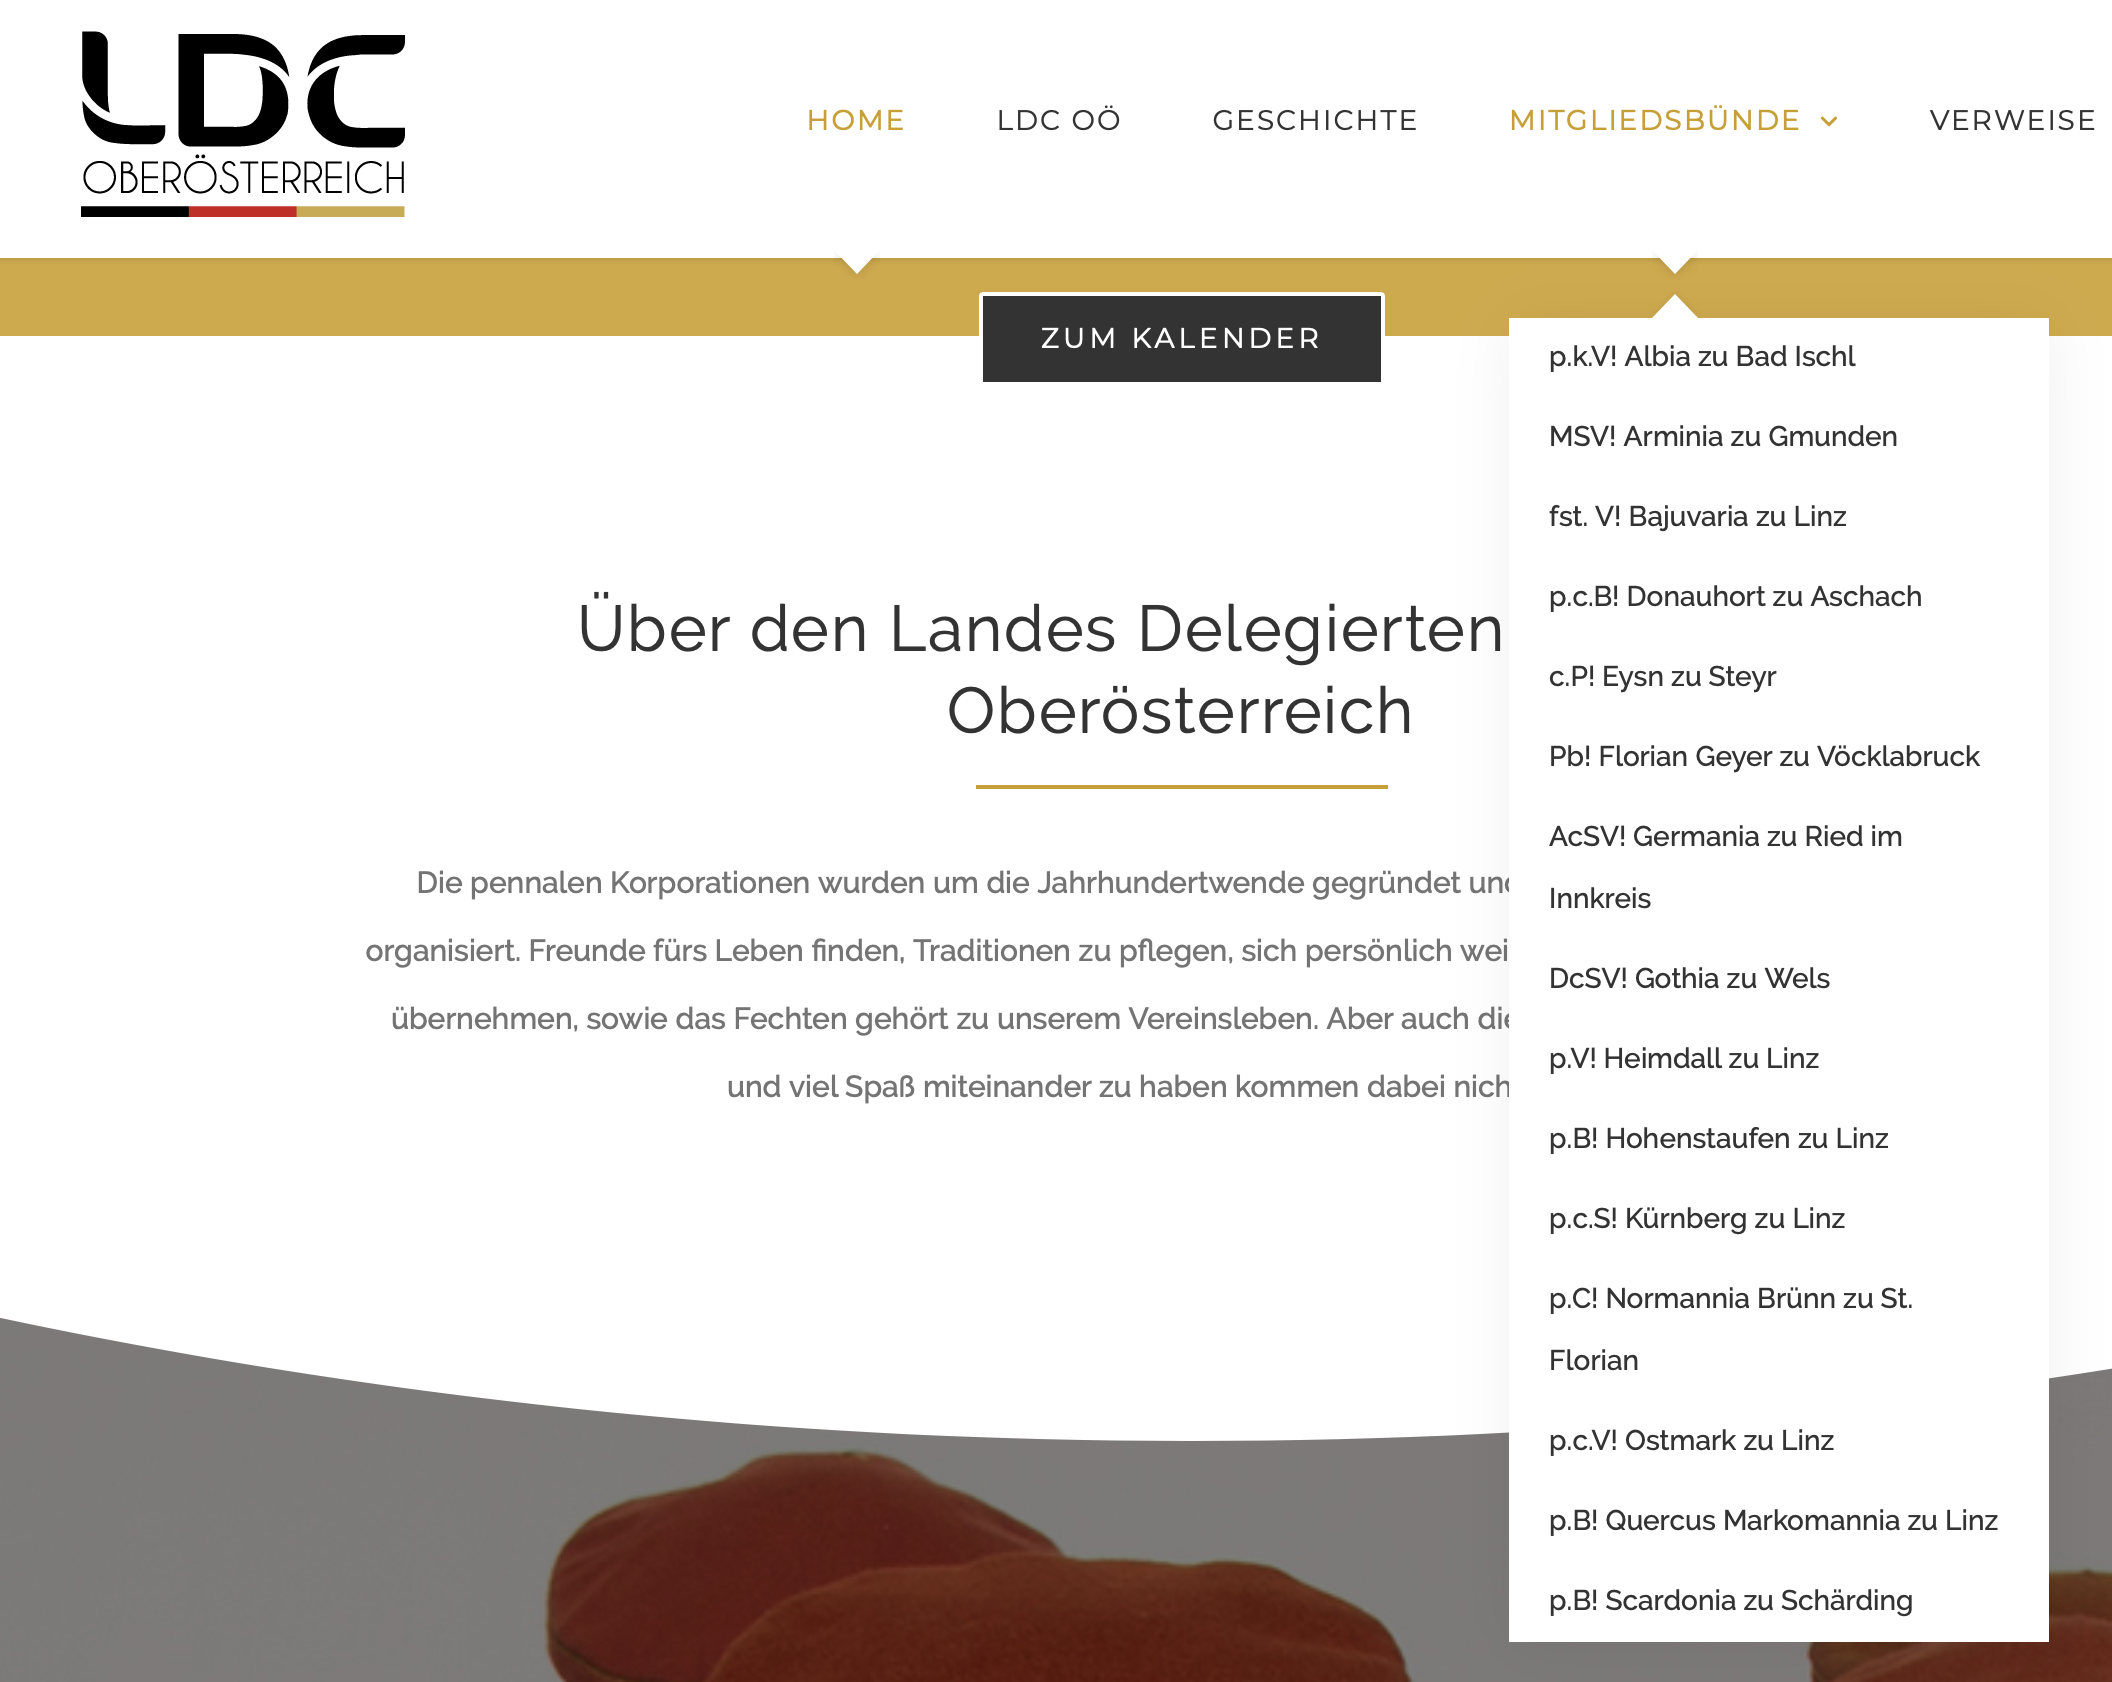 Mitglieder des LDC Oberösterreich: von der "Albia zu Bad Ischl" bis zur "Scardonia zu Schärding"